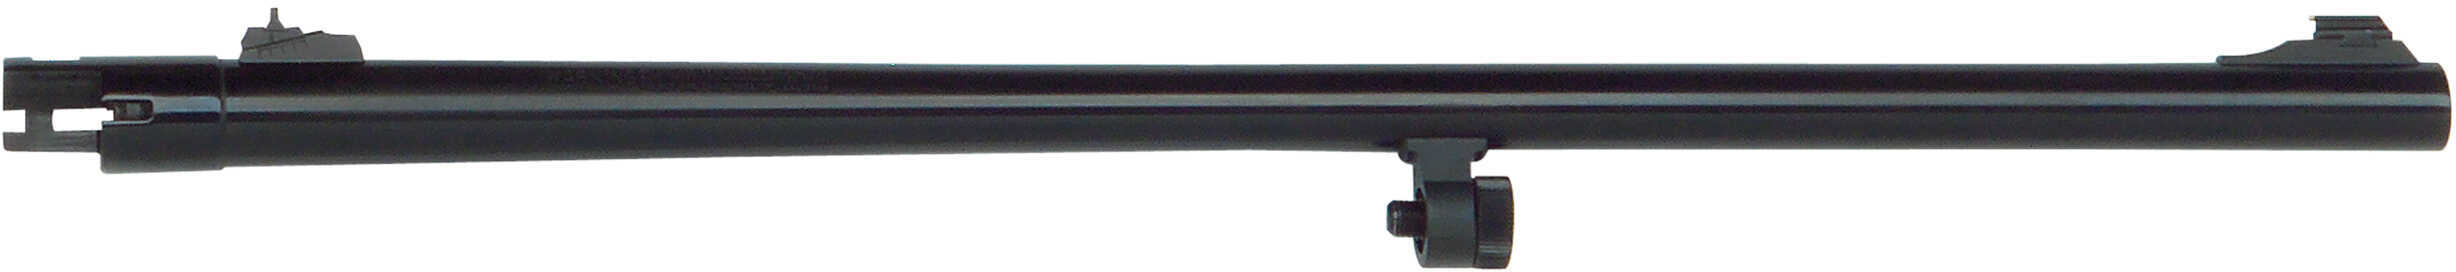 Mossberg 500 Barrel Slug 12 Gauge 24" Adjustable Rifle Sights Blued Md: 90120